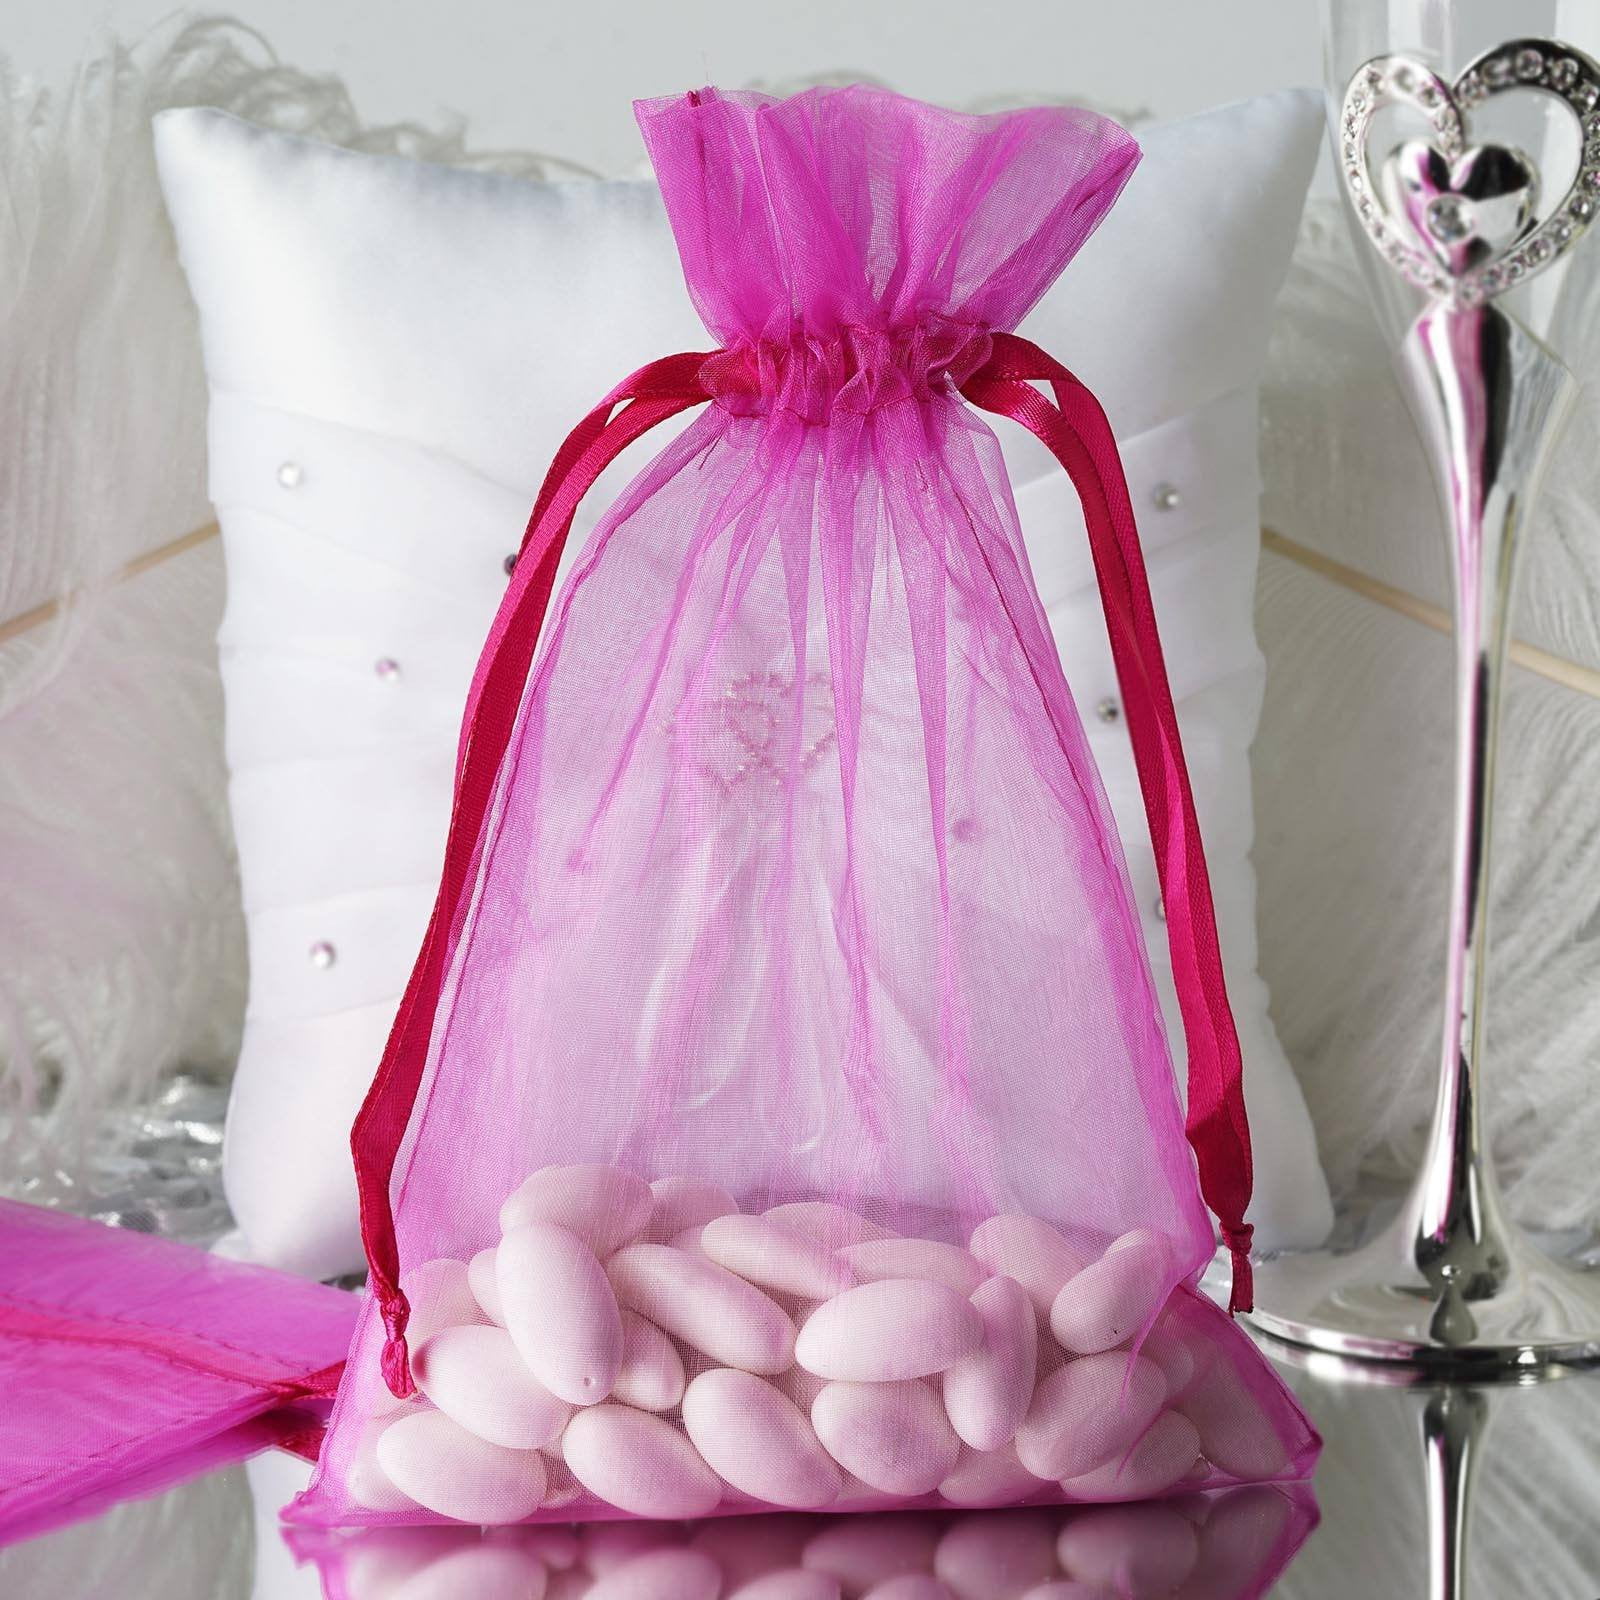 10 pcs 4x6" Lavender ORGANZA FAVOR BAGS Wedding Party Reception Gift Favors SALE 